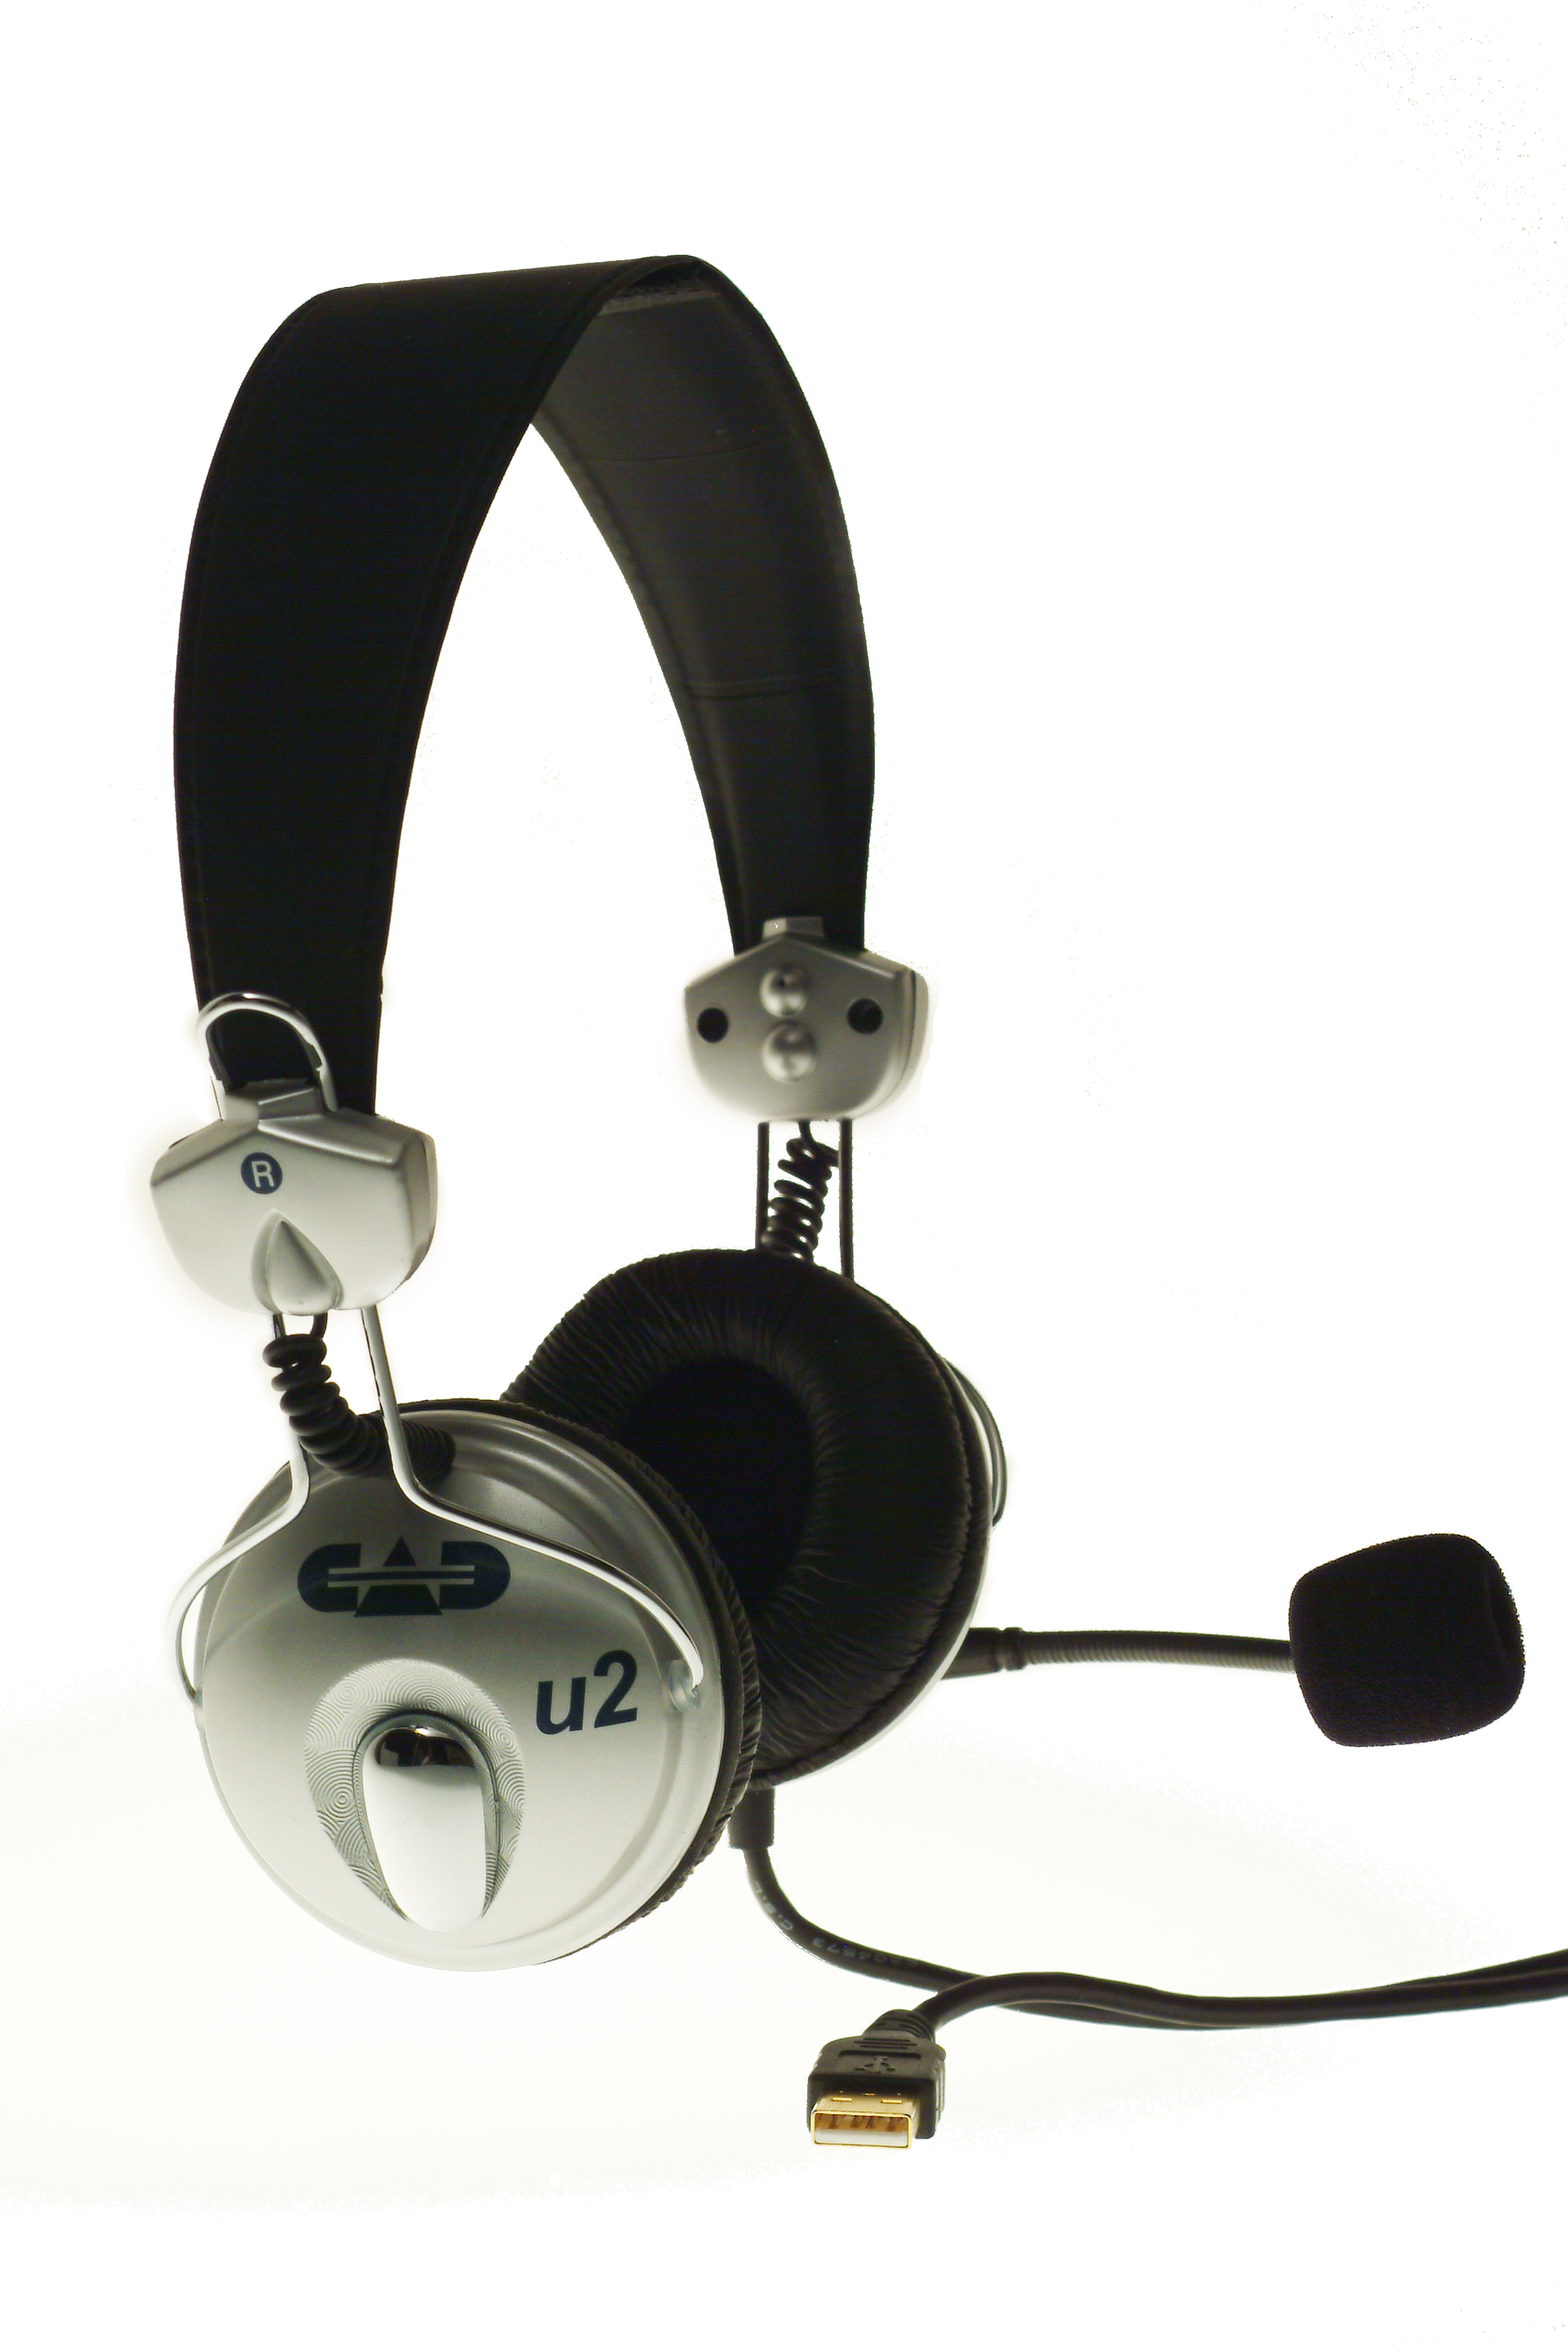 U2 (USB-Stereokopfhörer mit Mikrofon (Headset)